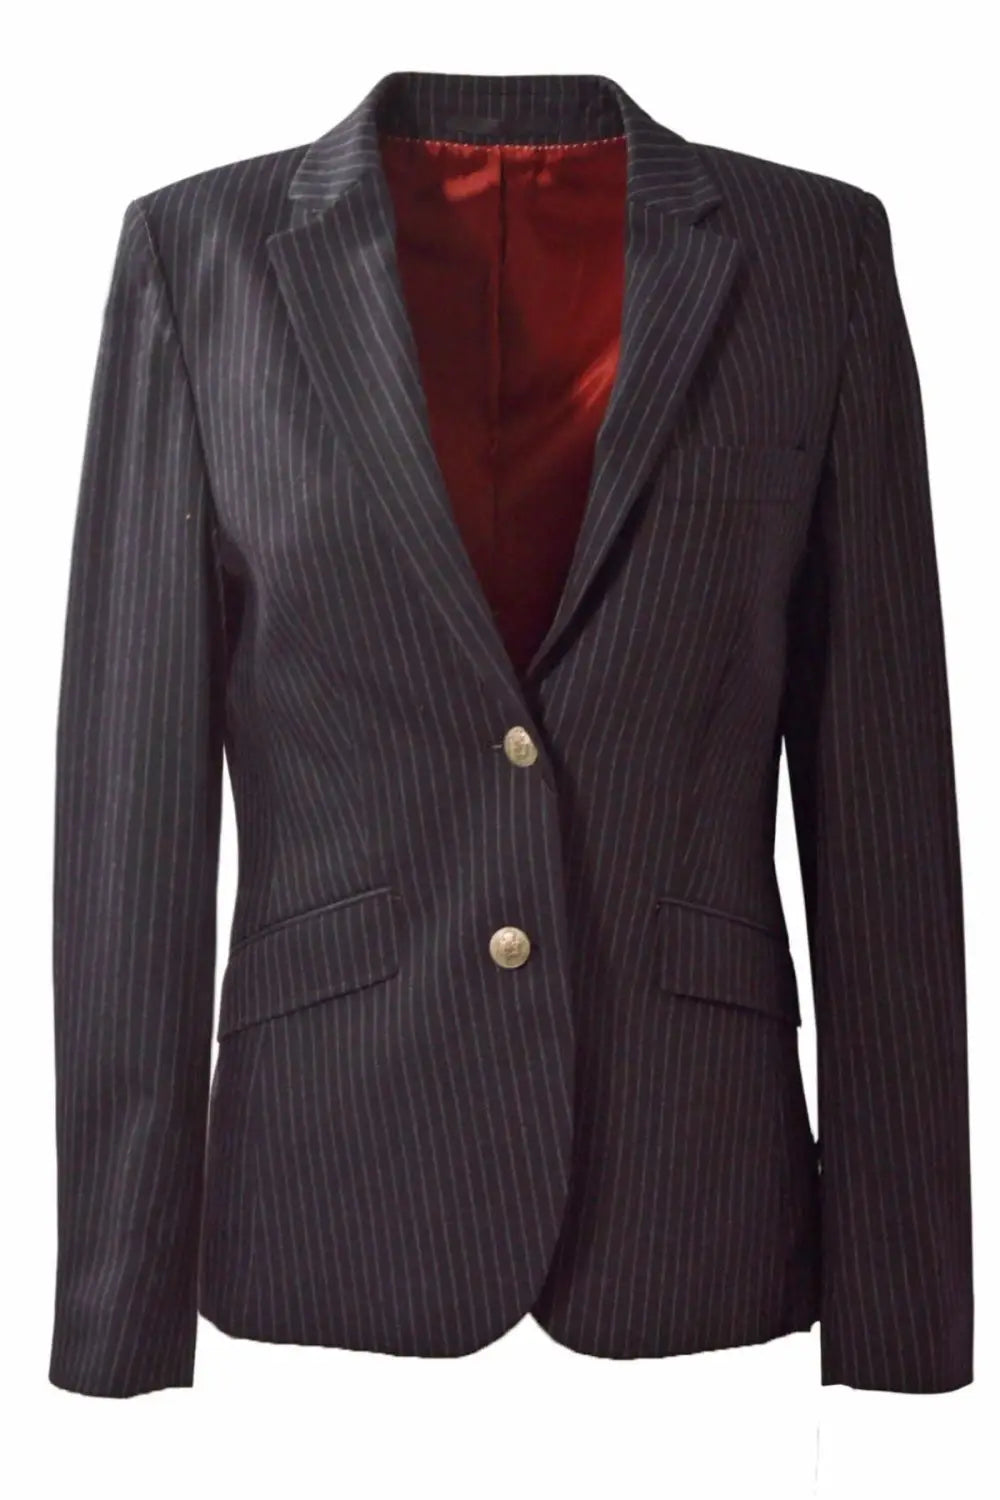 Turo Tailor Pinstripe Blazer Jacket